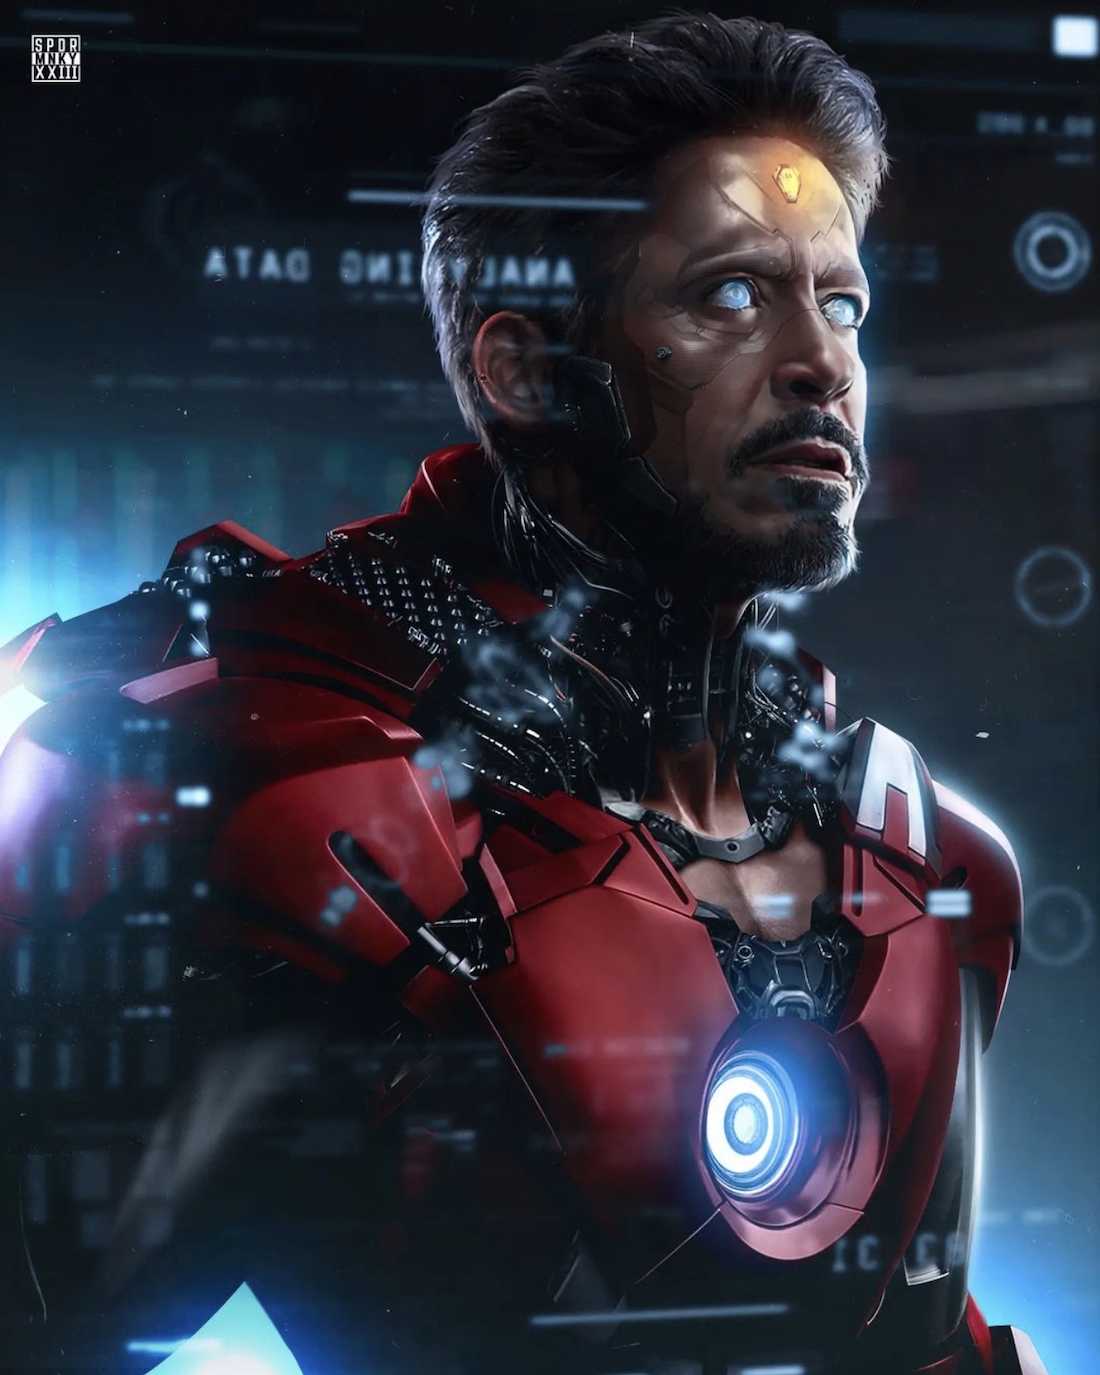 Обновленный костюм Железного человека из «Мстителей 6: Секретные войны» на фан-постере